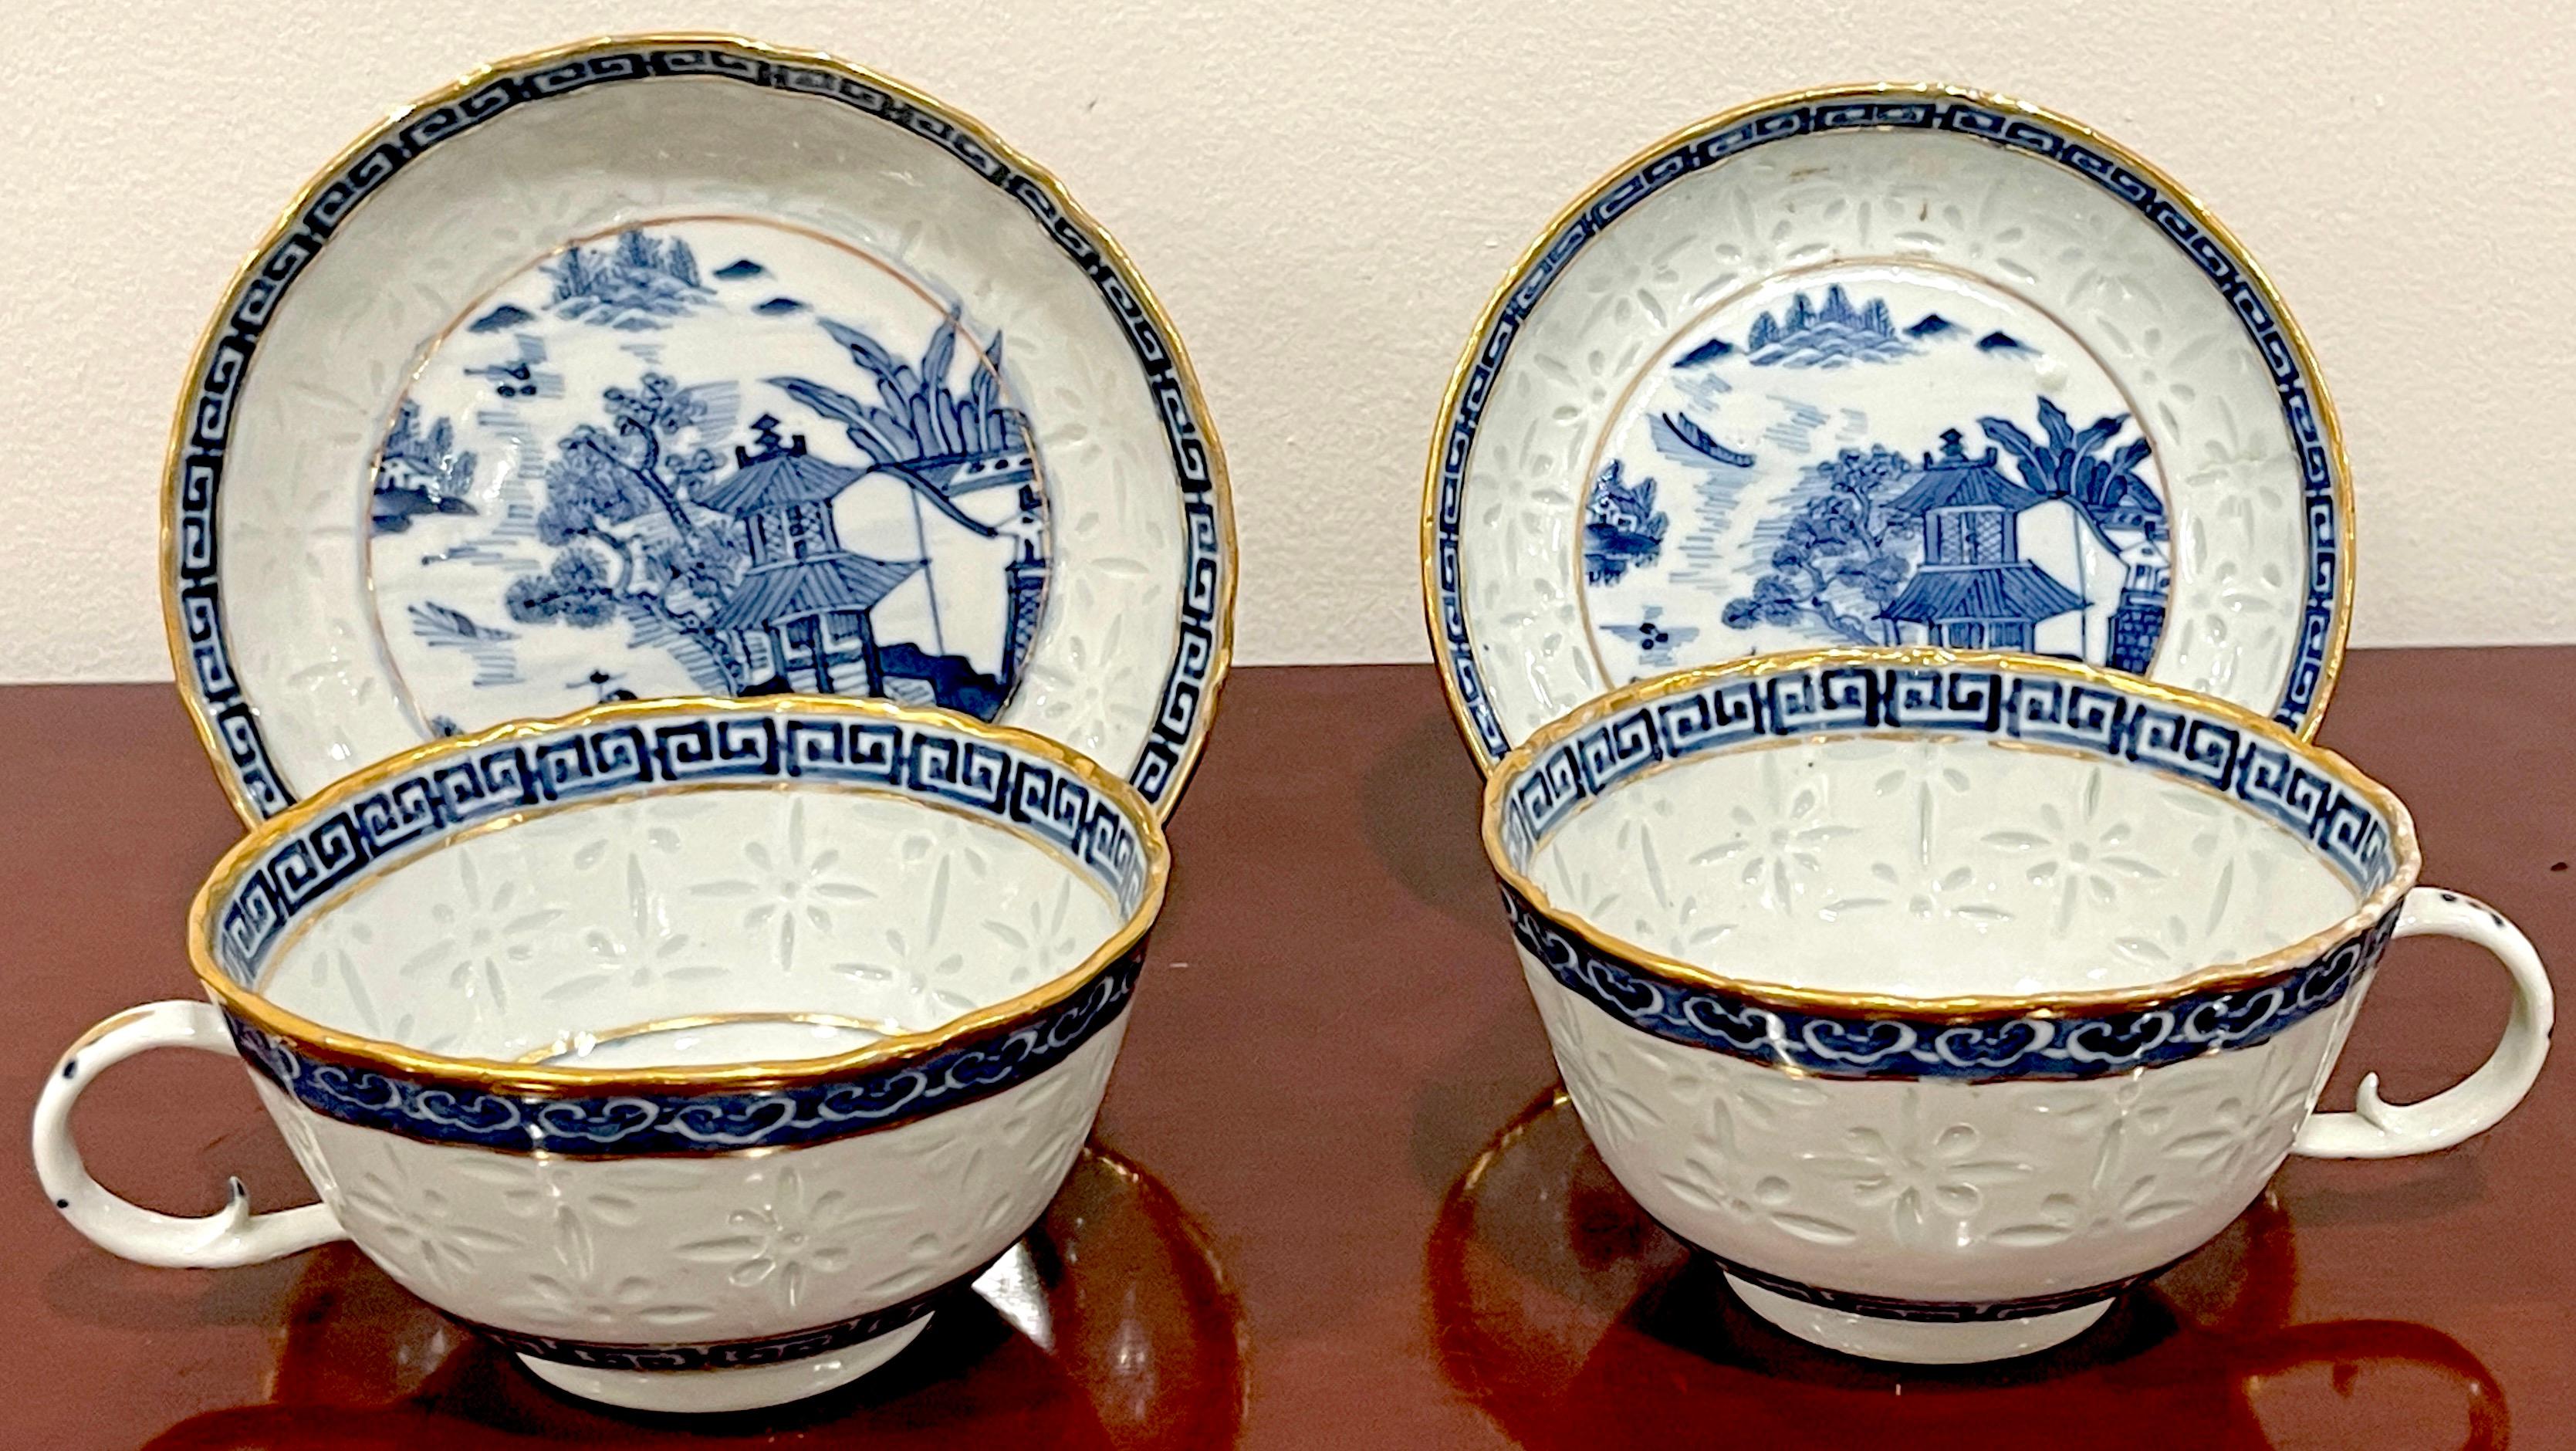 Paire de tasses et soucoupes « Ice Grain » de Nanking bleues et blanches, marquées Qianlong 
Chine, 19e siècle ou plus ancien, peut-être une commande spéciale

Une paire vraiment rare et exquise de tasses et soucoupes à motif bleu et blanc de